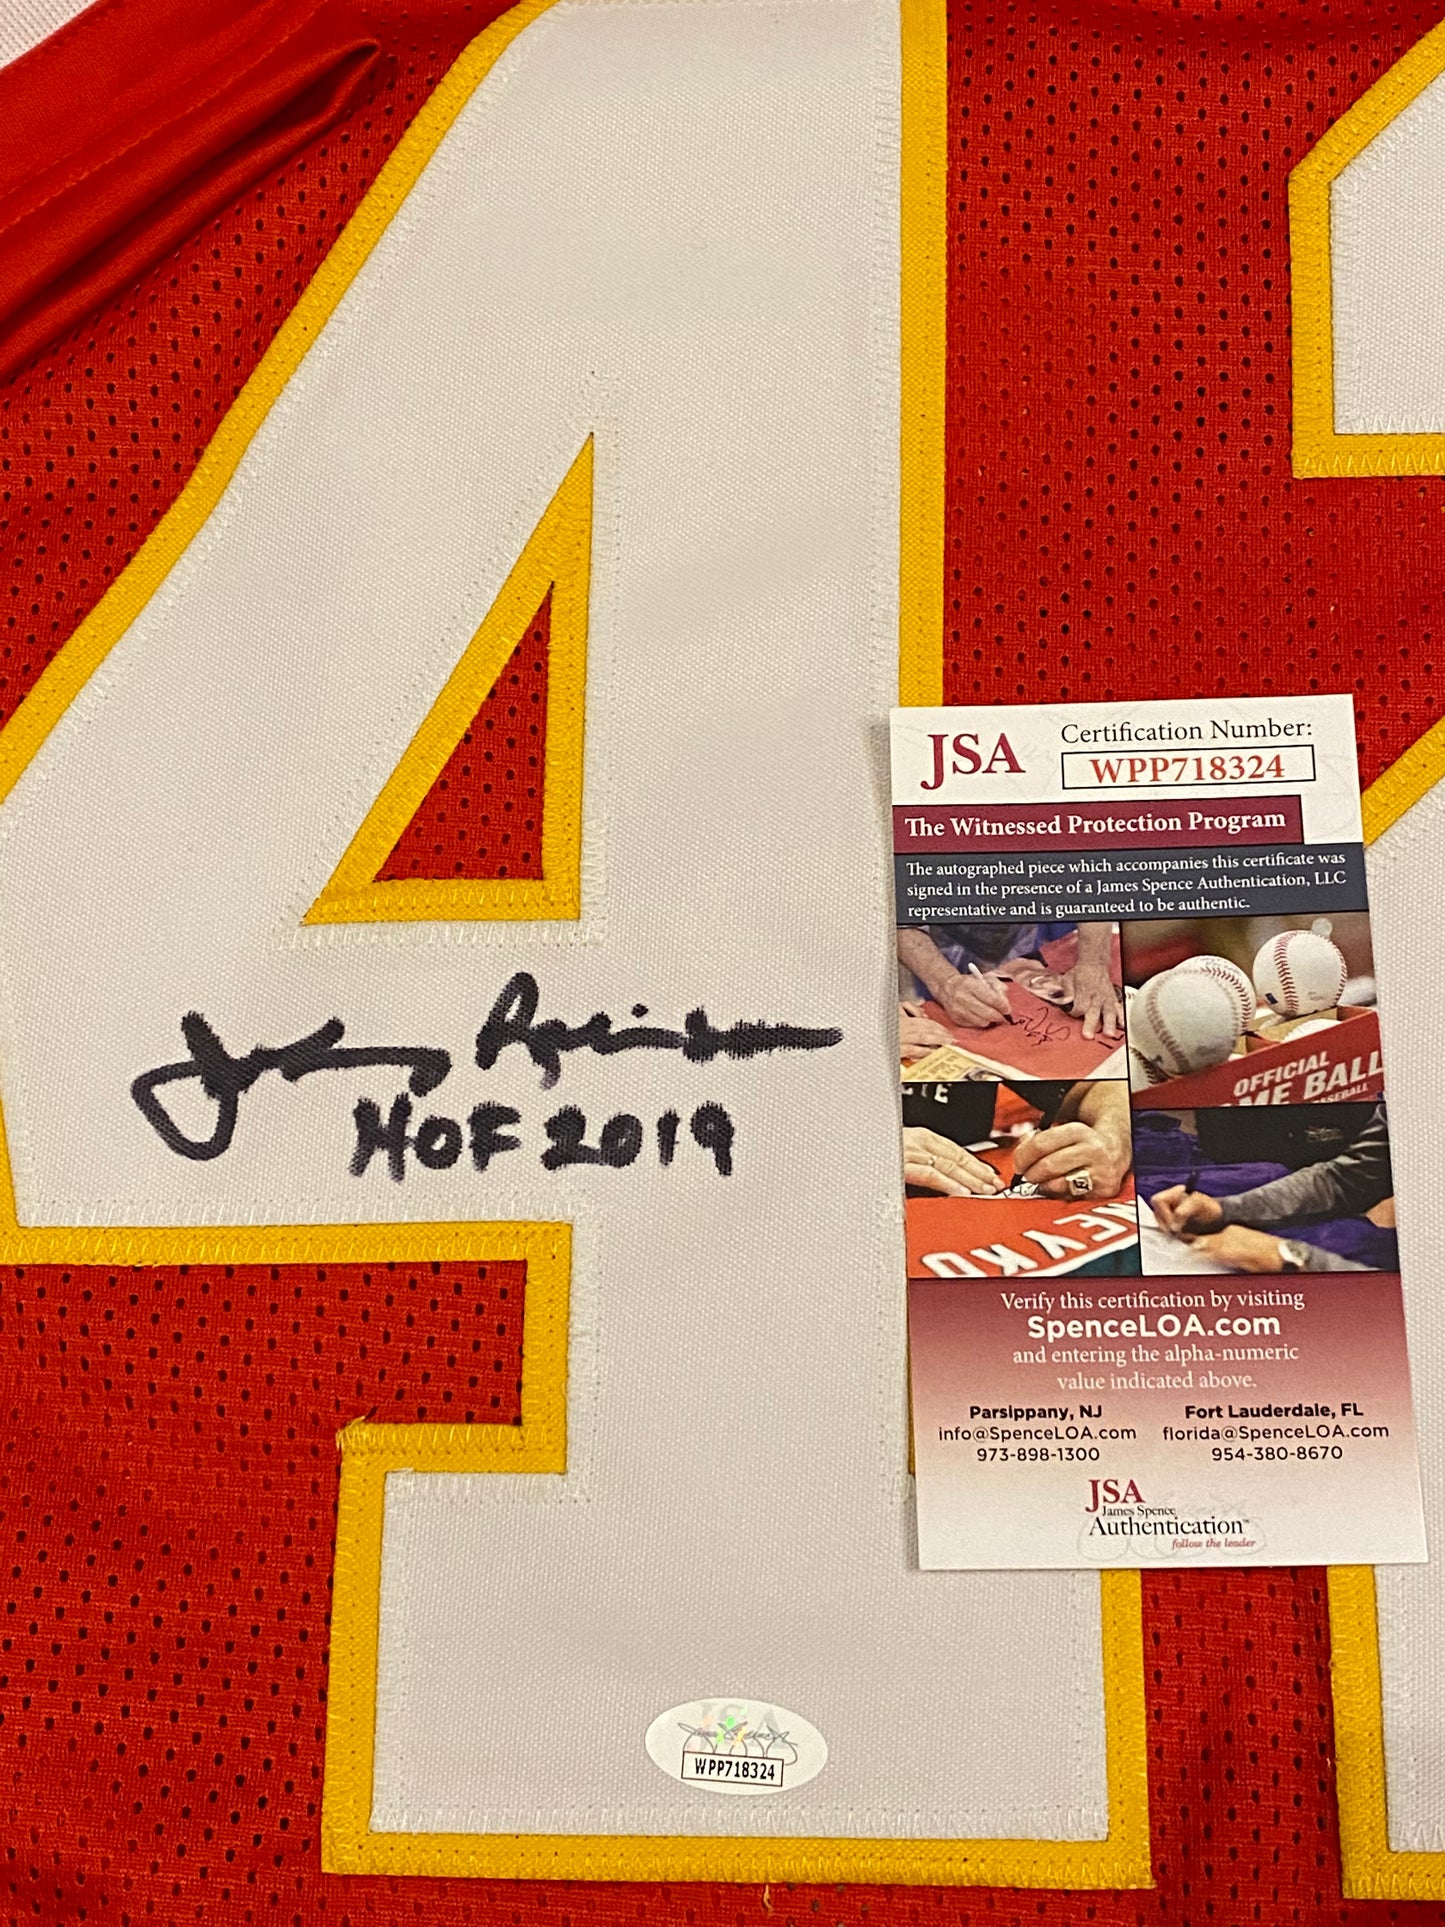 Johnny Robinson HOF signed custom jersey inscribed "HOF 2019" (JSA COA)